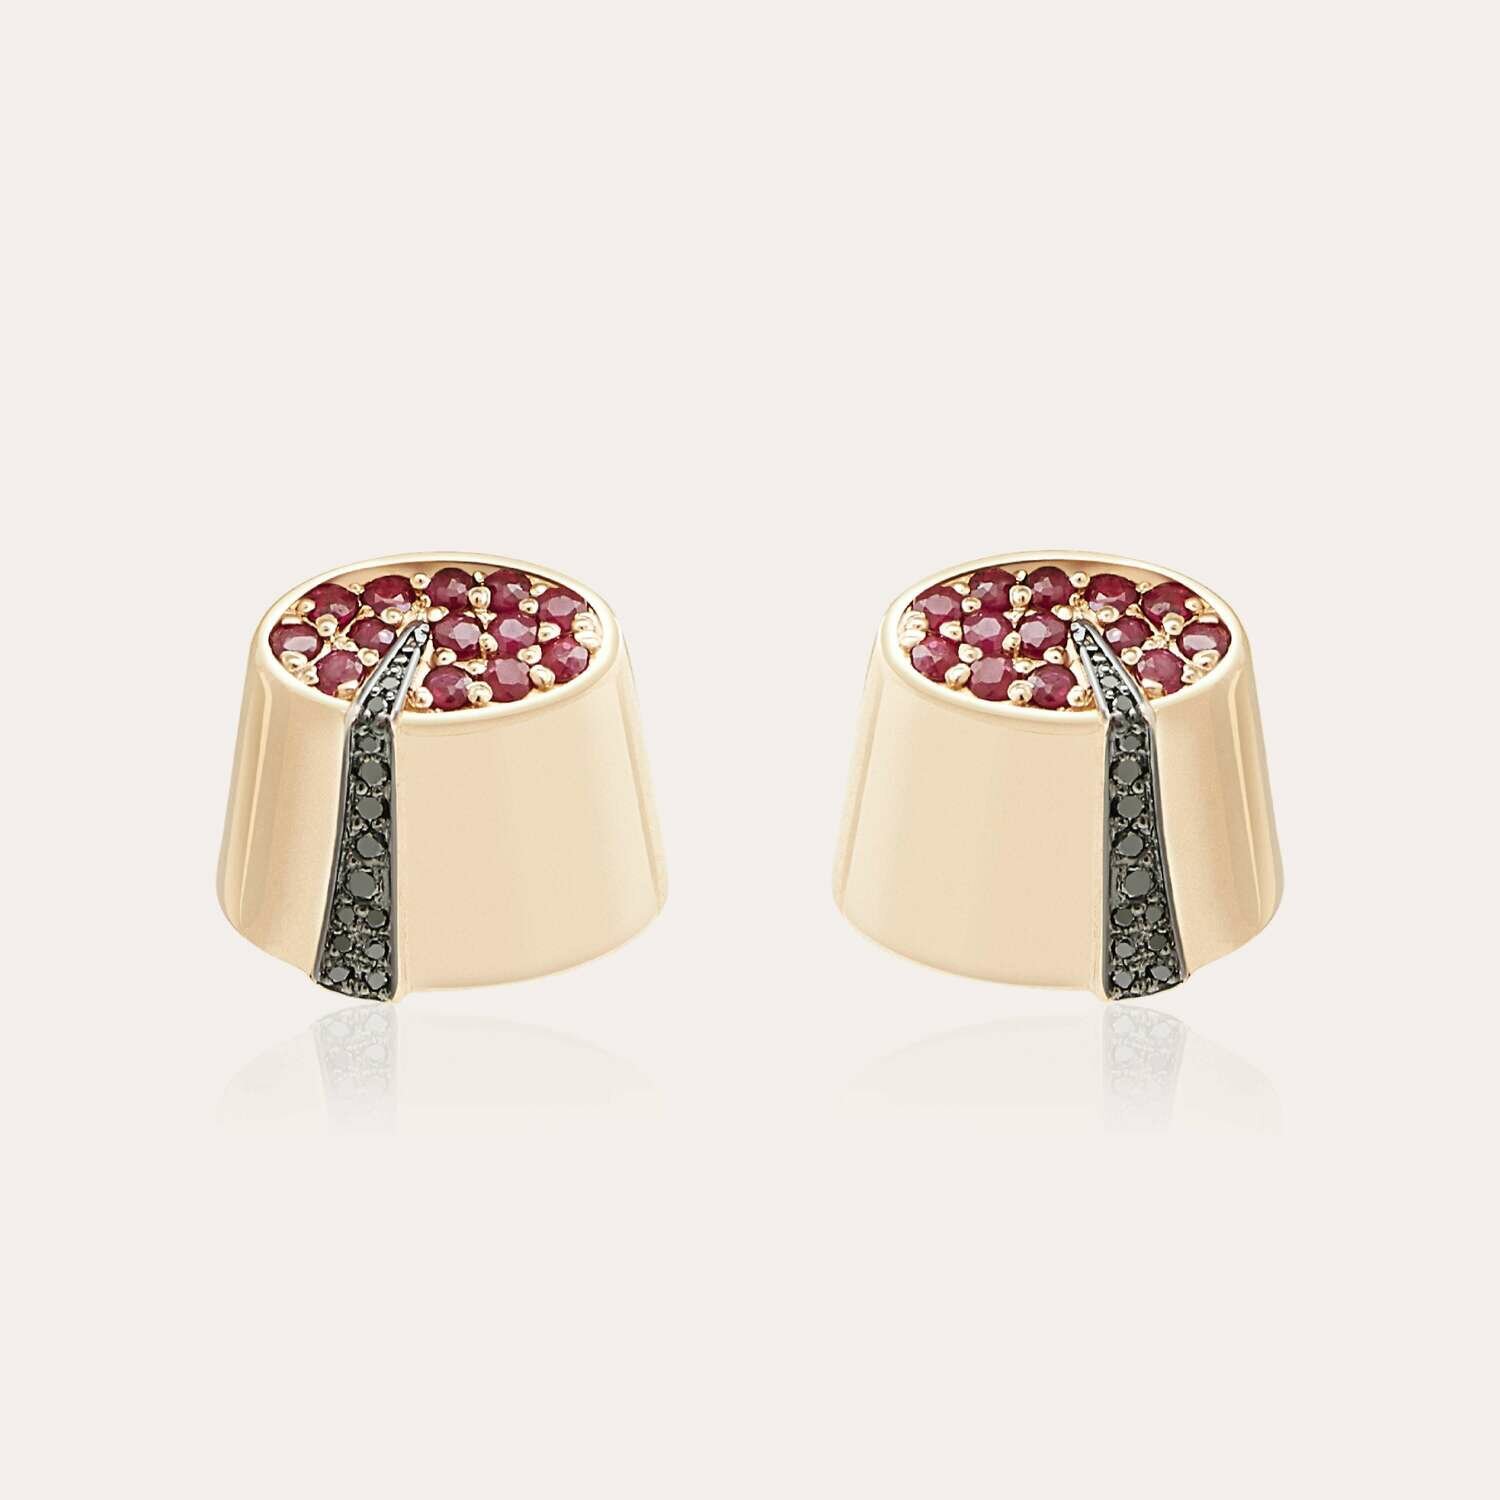 Tarboush Fancy Diamond Earrings with Ruby